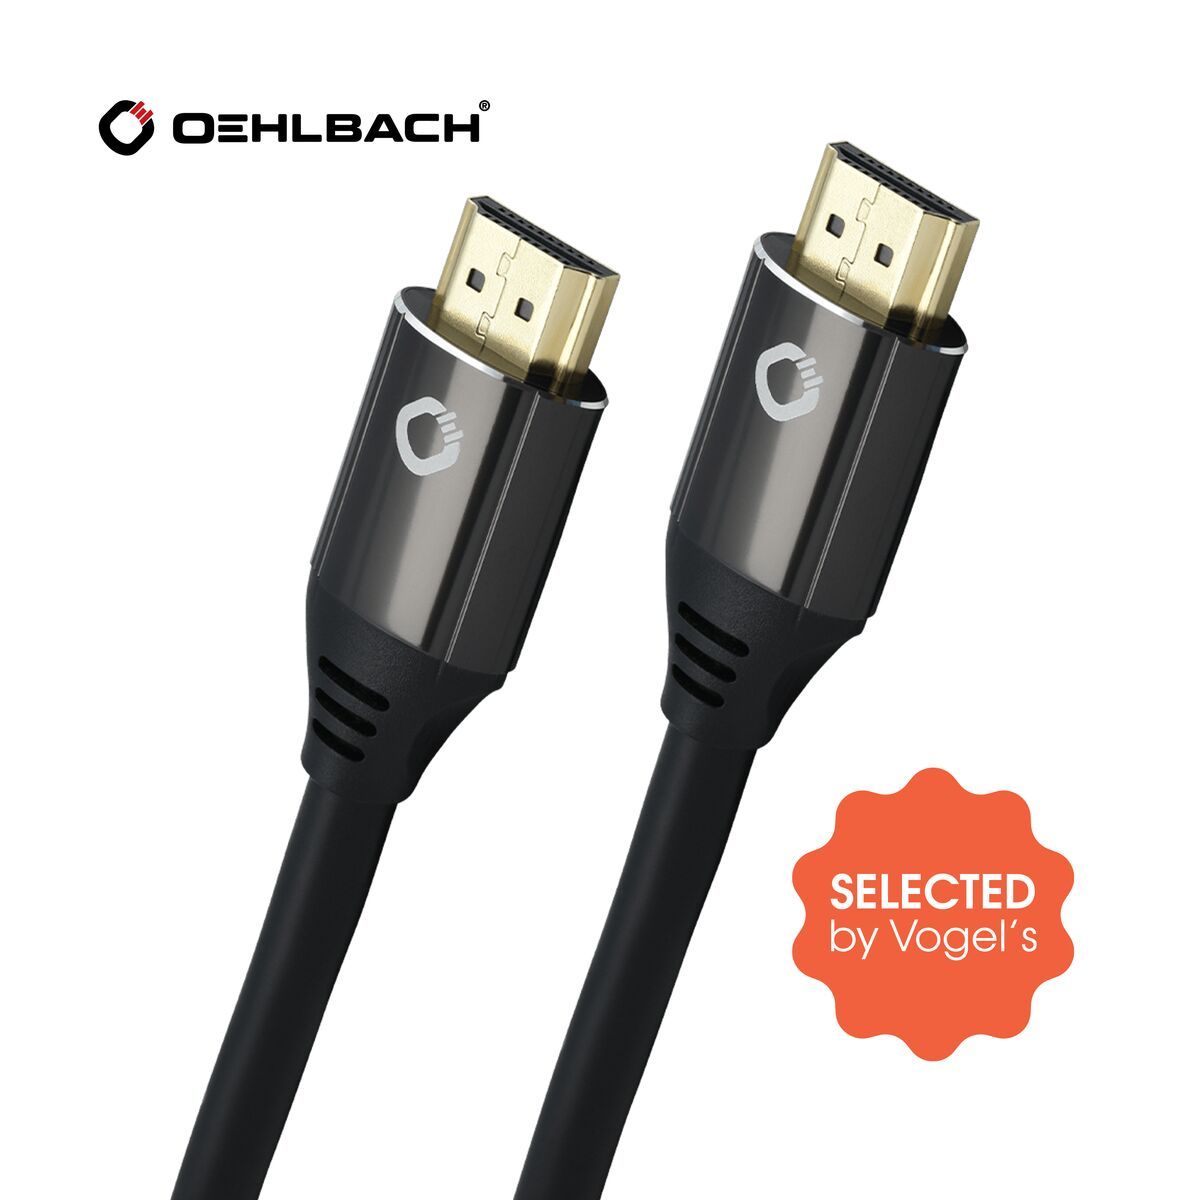 Vogel's Oehlbach Black Magic HDMI® kabel (3 meter) Zwart Promo